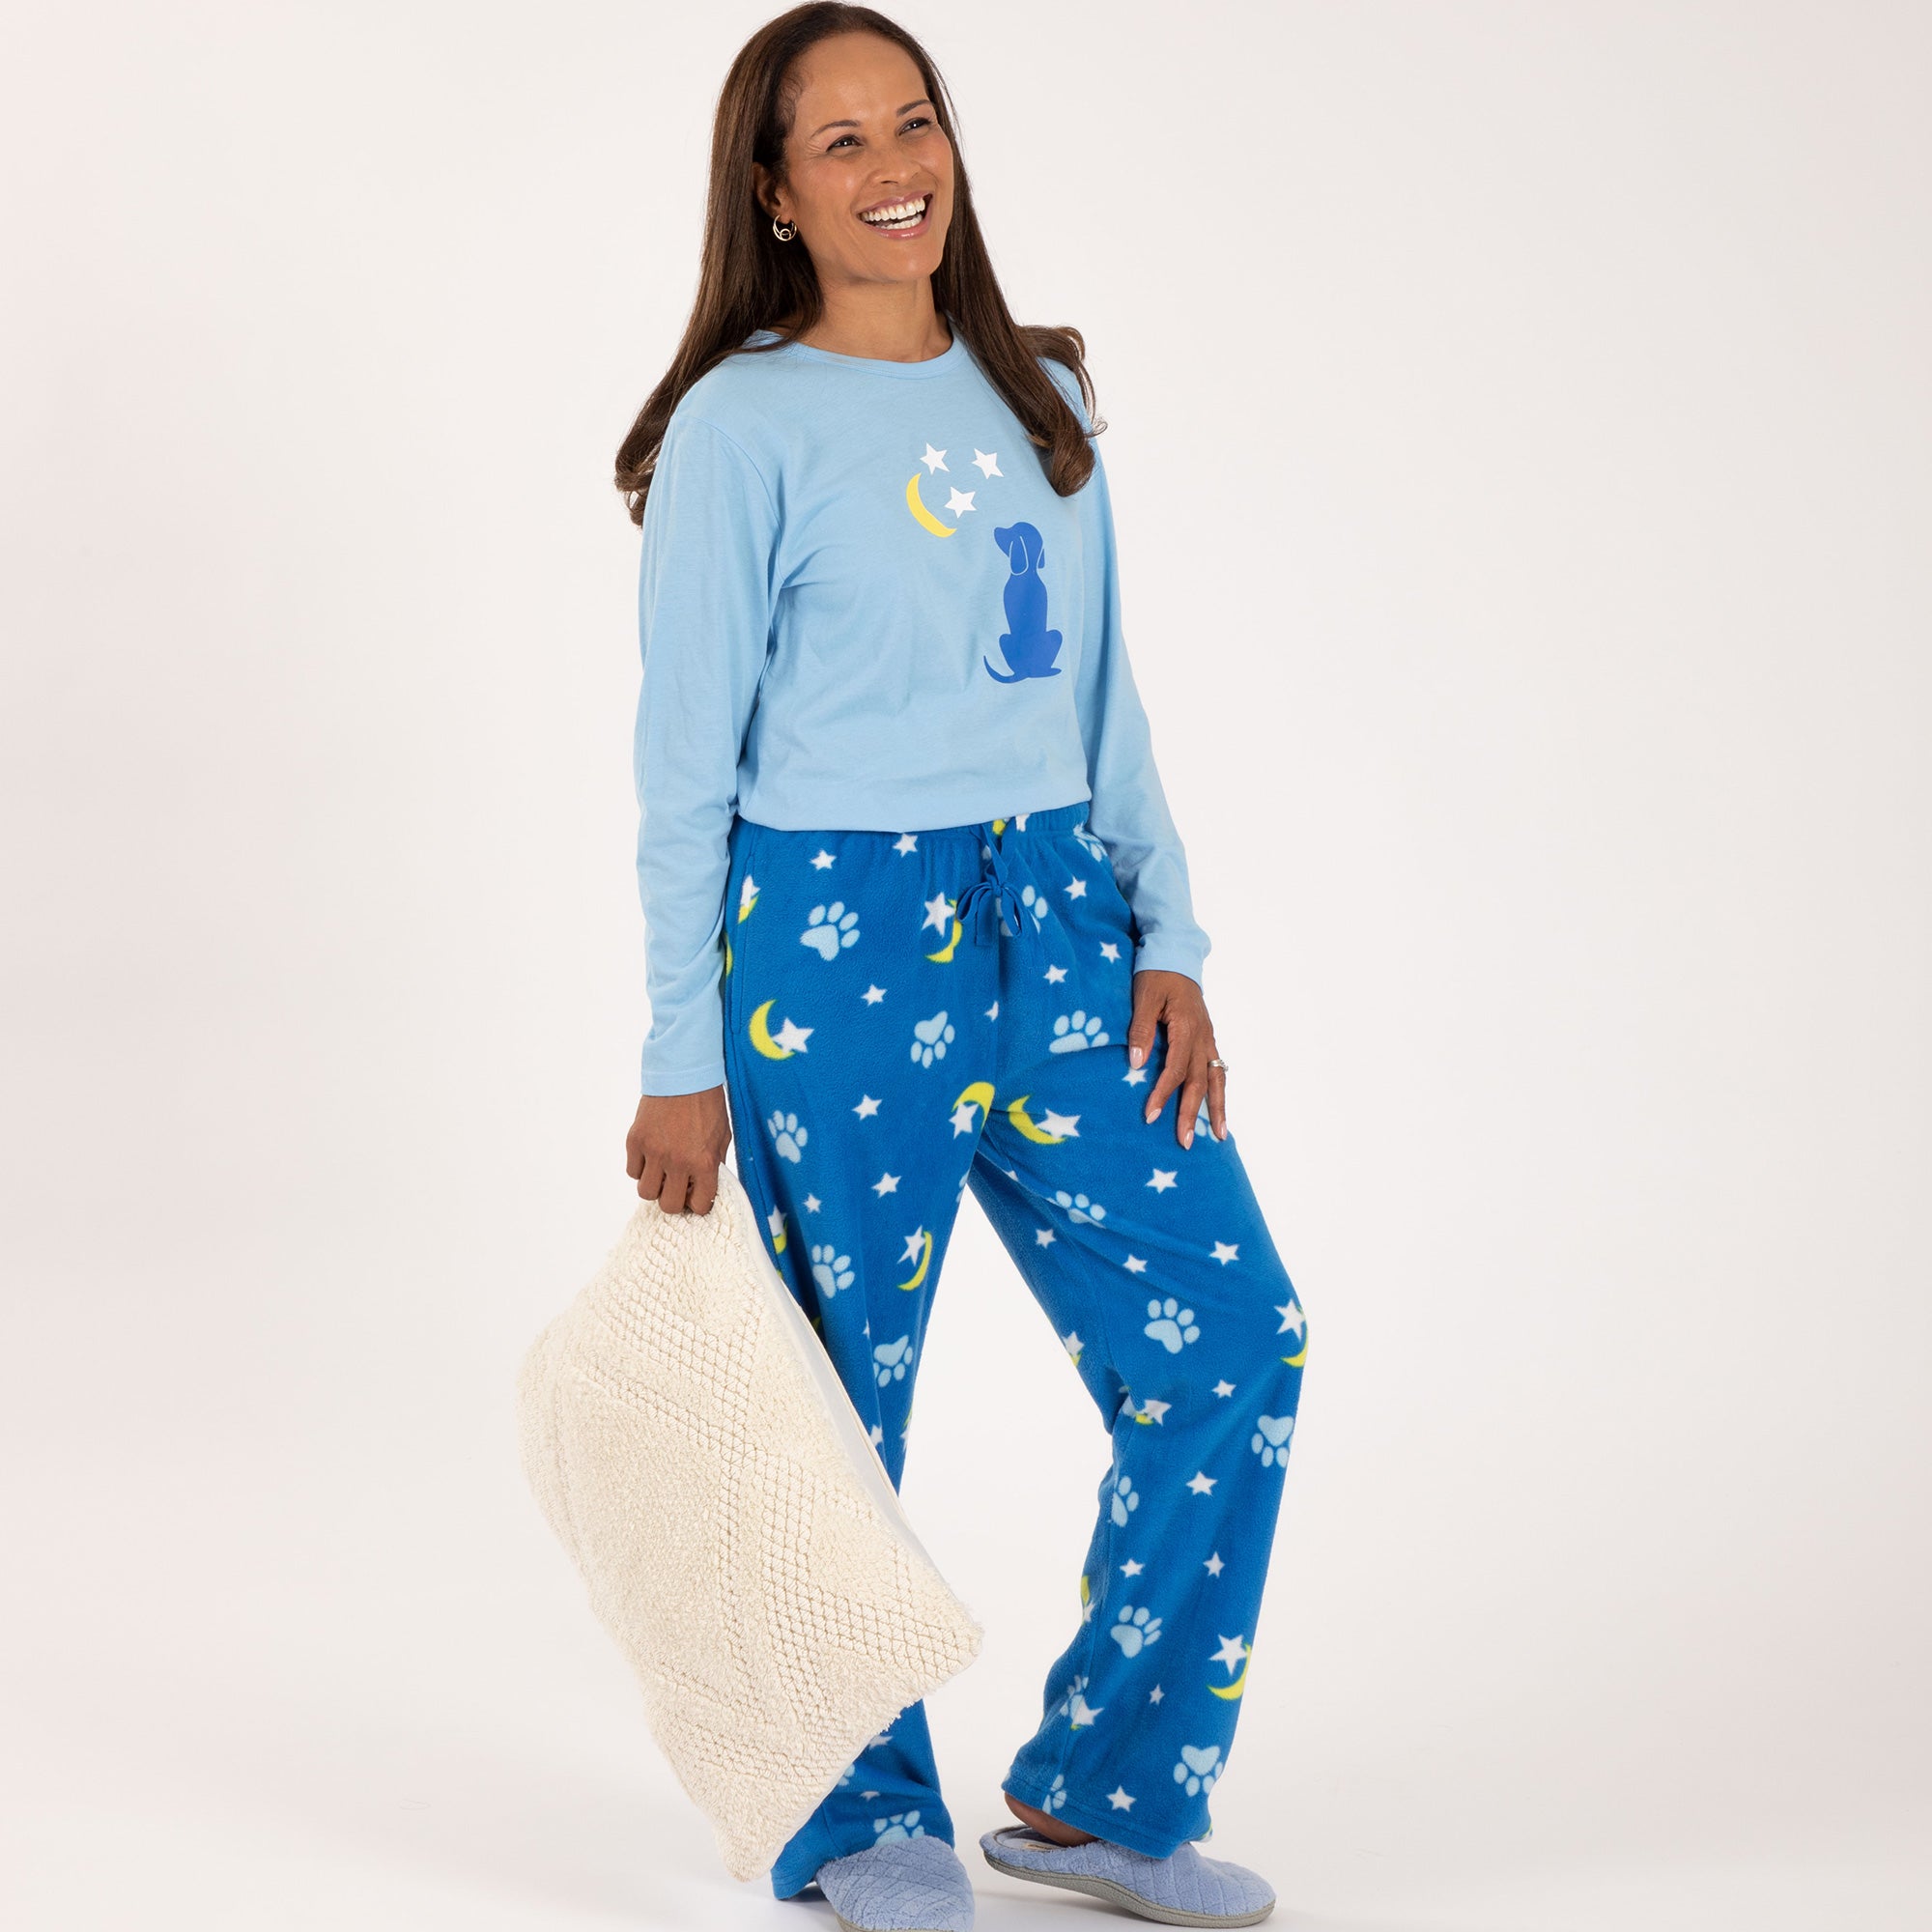 Star & Moon Paws Pajama Set